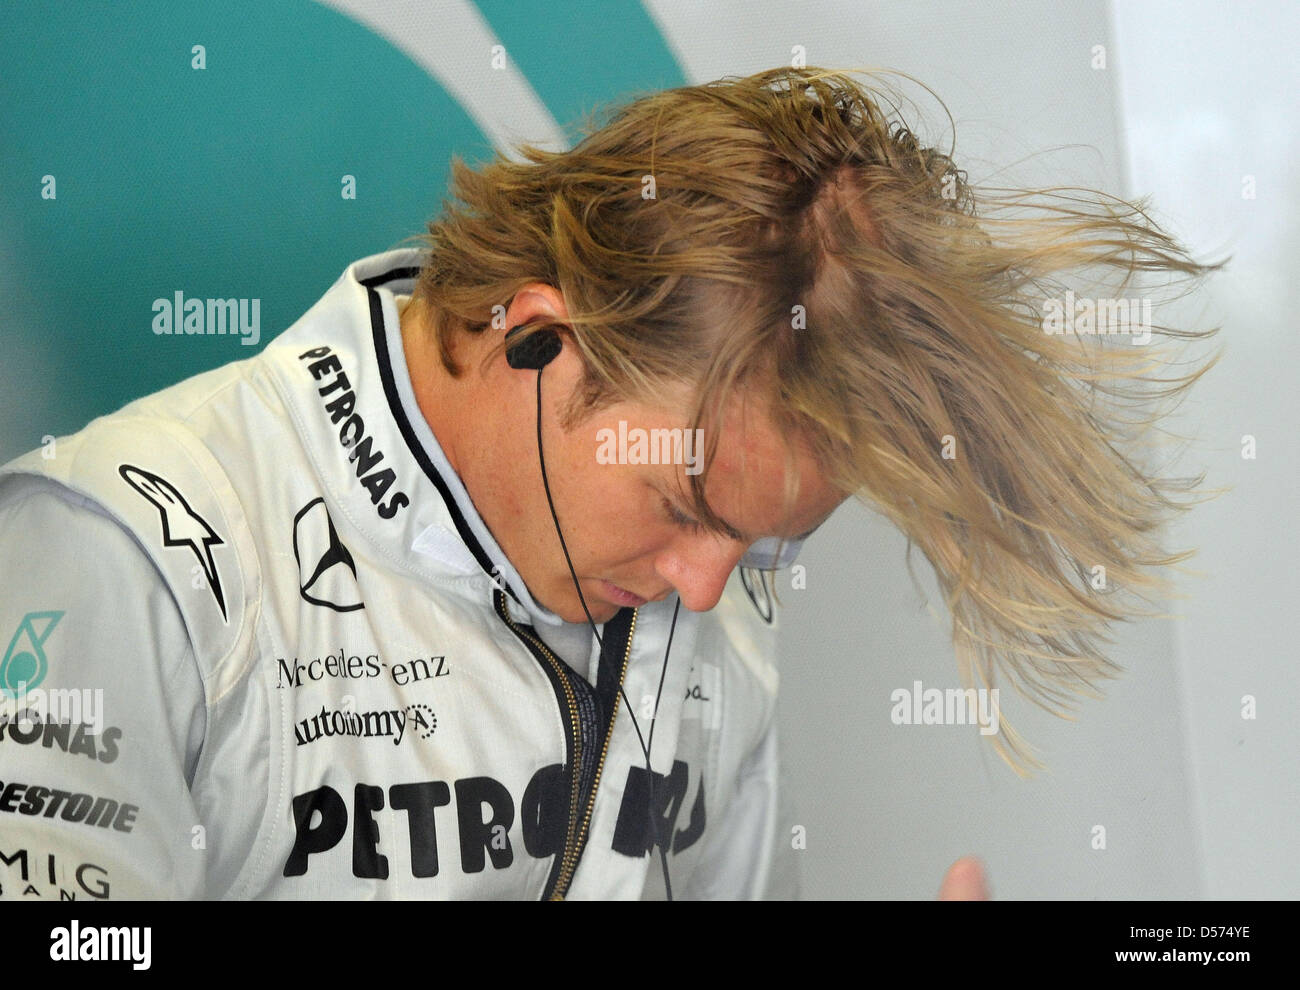 Il tedesco Nico Rosberg della Mercedes GP durante una sessione di prove per il Gran Premio di Cina a Shanghai nel Circuito Internazionale di Shanghai, in Cina, 16 aprile 2010. Il Gran Premio di Cina si terrà il 18 aprile 2010. Foto: Peter Steffen Foto Stock